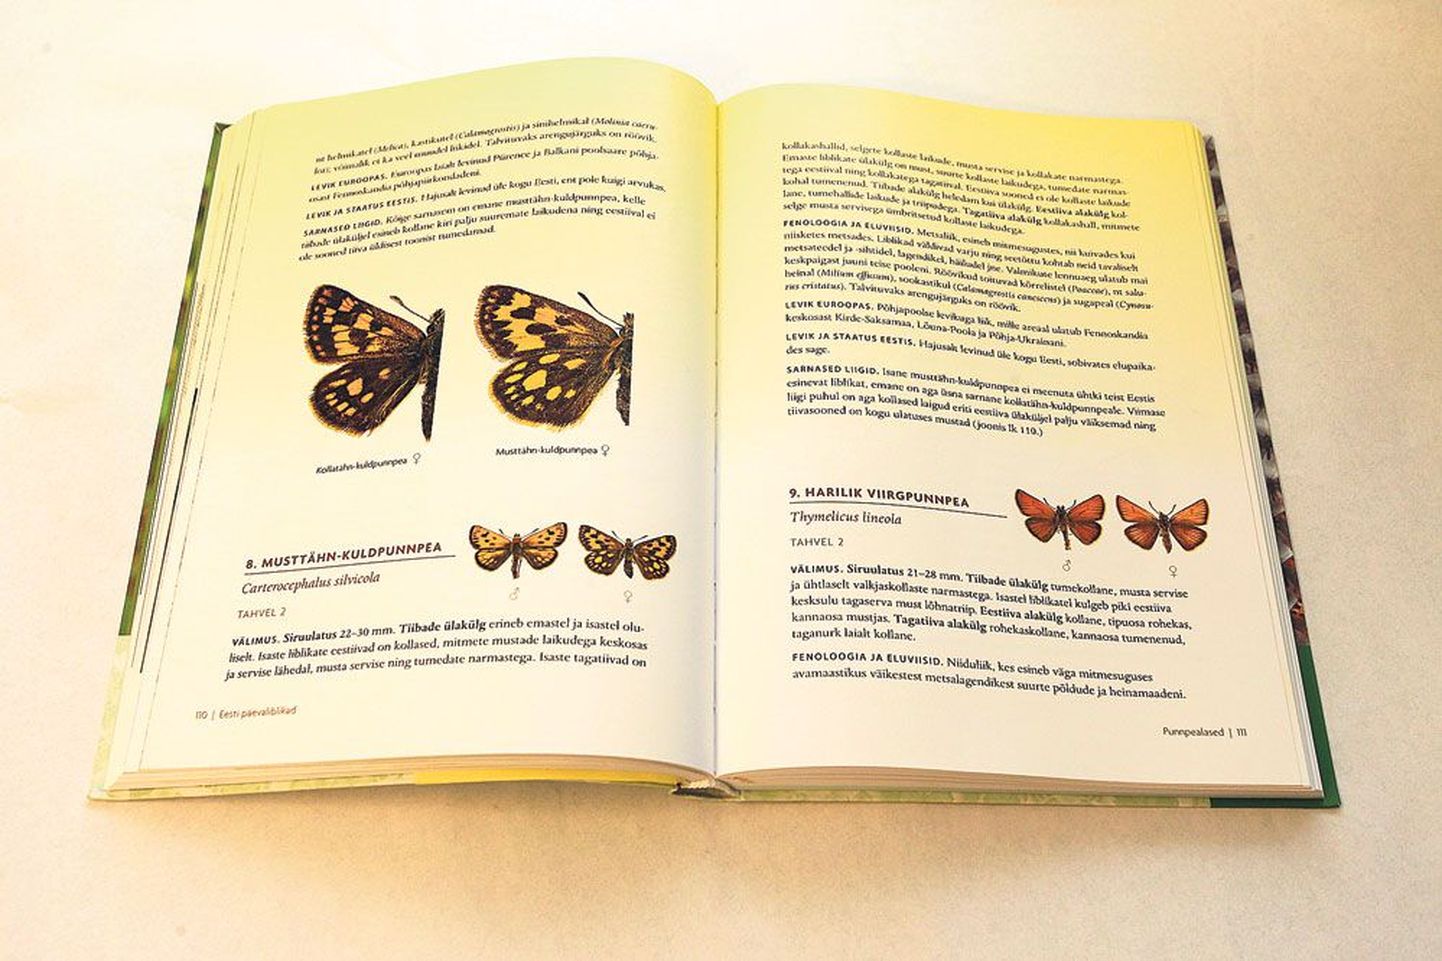 Kaks kolmandikku raamatust «Eesti päevaliblikad» hõlmavad leheküljed, mille abil on võimalik määrata Eesti 113 päevaliblika liiki. Leheküljel 110 on musttähn-kuldpunnpea täielik ning kollatähn-kuldpunnpea ja hariliku viirgpunnpea kirjeldus.